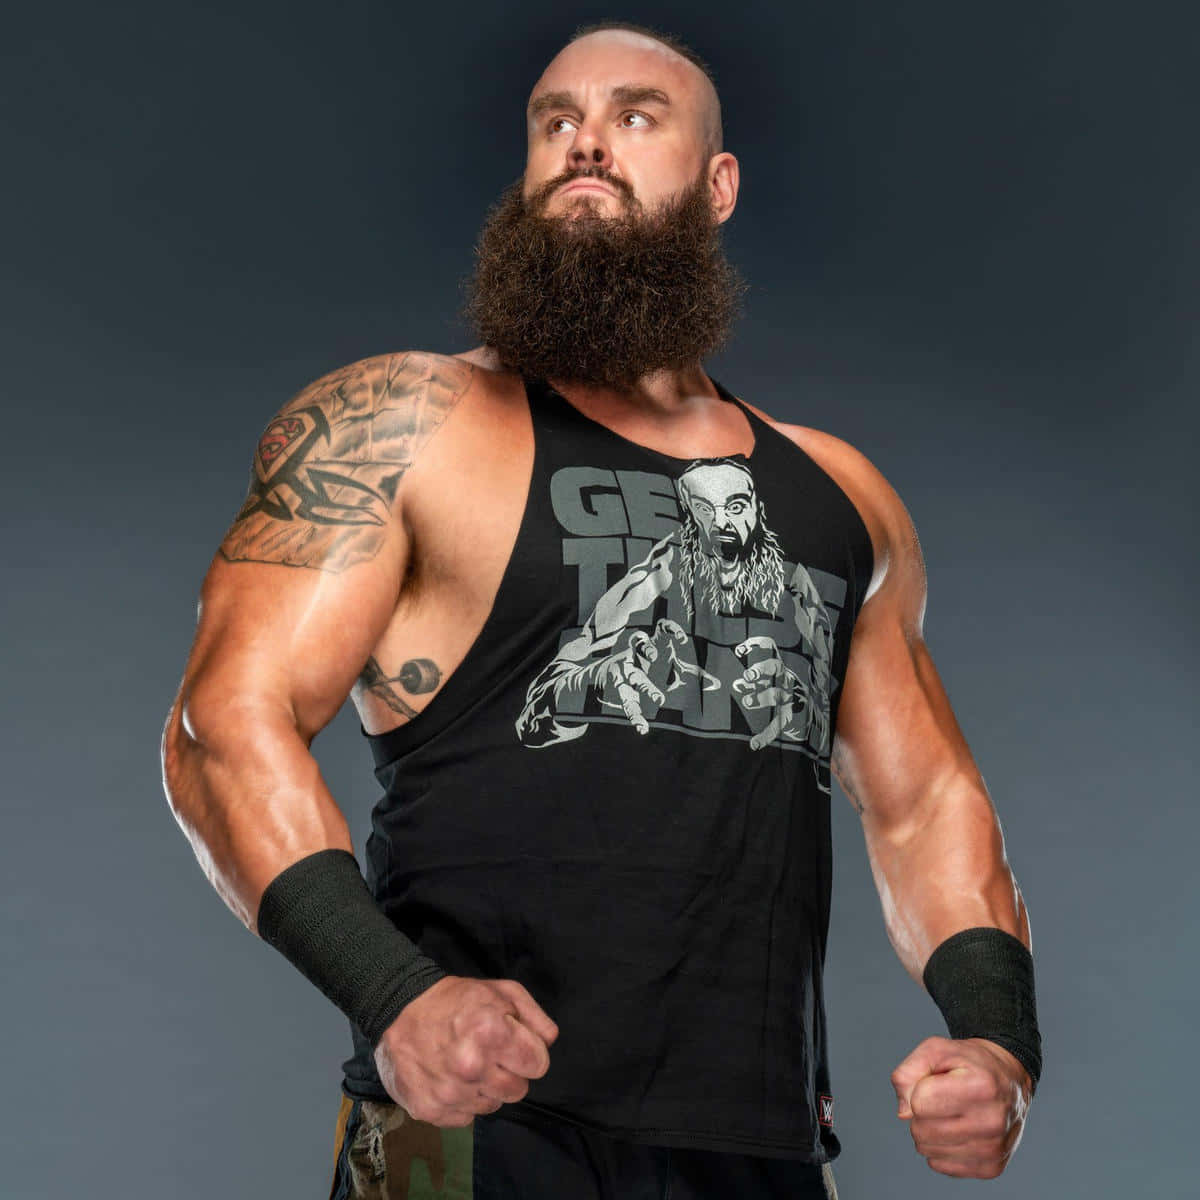 Wwe American Wrestler Braun Strowman Background